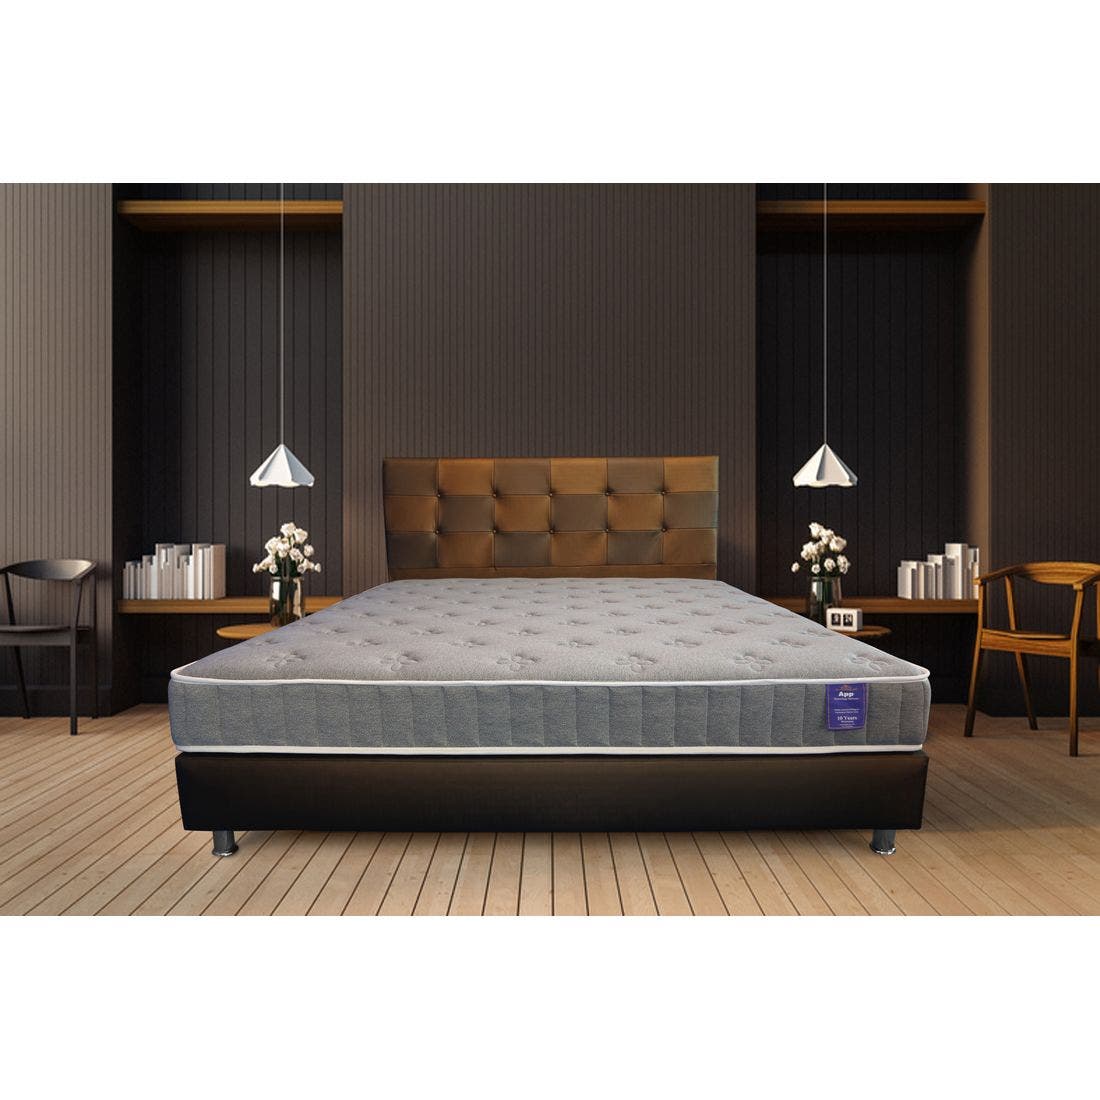 39015049-mattress-bedding-mattresses-spring-mattresses-31